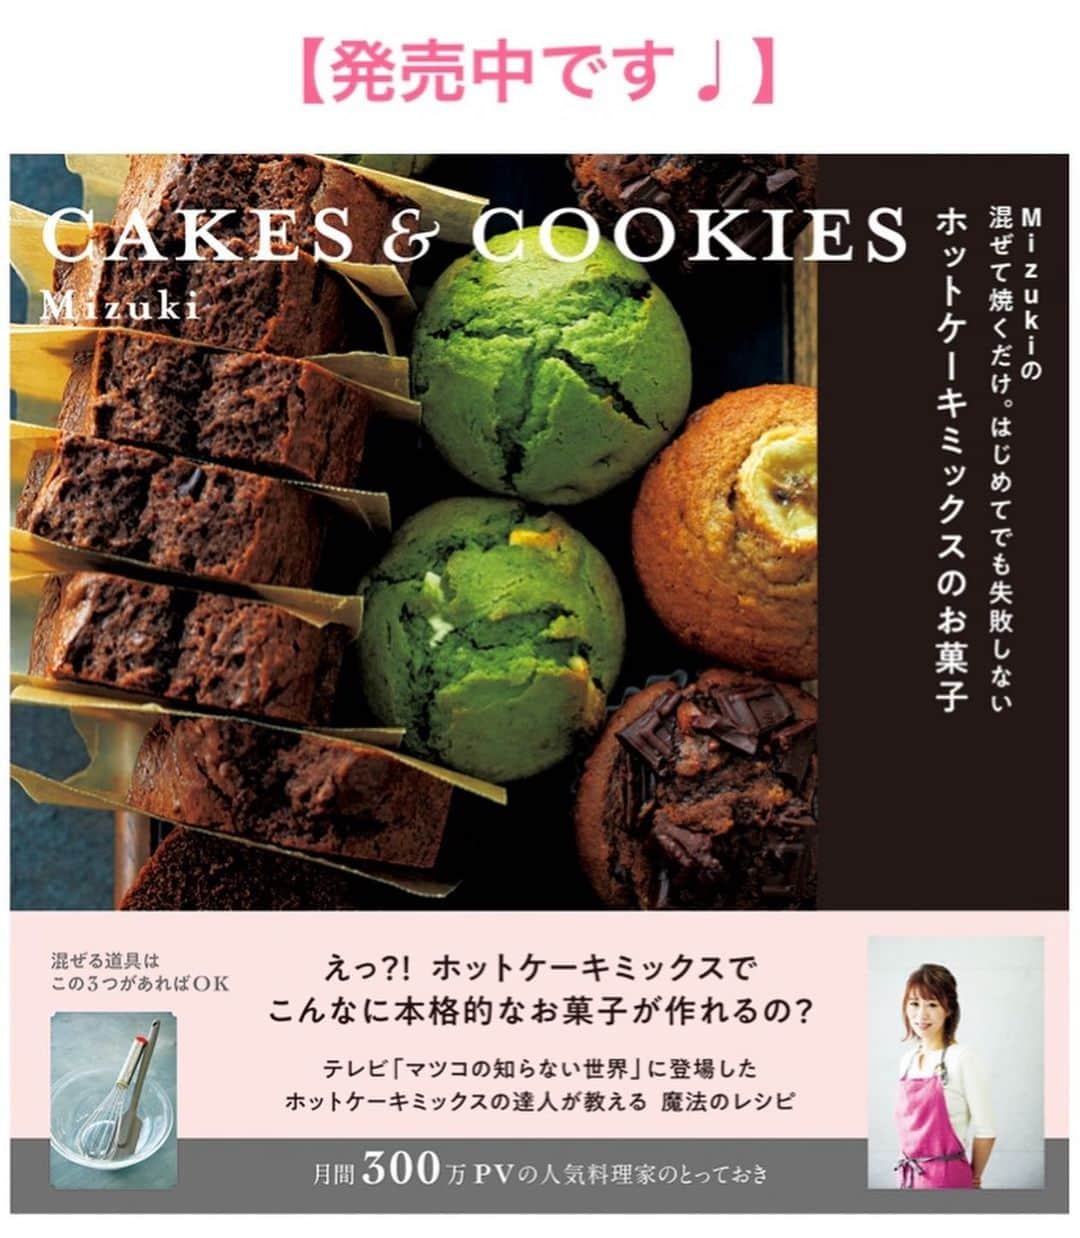 Mizuki【料理ブロガー・簡単レシピ】さんのインスタグラム写真 - (Mizuki【料理ブロガー・簡単レシピ】Instagram)「・﻿ 【レシピ】ーーーーーーーーーーーーーーー ﻿ ♡ごはんがすすむ♡新じゃがのそぼろ煮♡﻿ ーーーーーーーーーーーーーーーーーーーー﻿ ﻿ ﻿ おはようございます(*^^*)﻿ ﻿ 今日ご紹介させていただくのは﻿ 春のごちそう新じゃがおかず♩﻿ お手軽なひき肉と煮込んで﻿ あんかけ風に仕上げました♡﻿ 甘辛味でとってもごはんに合いますよ♫﻿ ﻿ 皮が薄い新じゃがは﻿ 皮ごと調理するのがおすすめです♡﻿ お鍋ひとつで簡単にできるので﻿ よかったらお試し下さいね(*^^*)﻿ ﻿ ﻿ ﻿ ーーーーーーーーーーーーーーーーーーーー﻿ 【2〜3人分】﻿ 新じゃが...小7個(400g)﻿ 鶏ひき肉...150g﻿ サラダ油...小1﻿ ●水...300ml﻿ ●みりん・醤油...各大2﻿ ●砂糖...大1﻿ ☆片栗粉...小2﻿ ☆水...大1﻿ (なくても)スナップエンドウ...適量﻿ ﻿ 1.じゃがいもは皮ごと綺麗に洗う(大きいものは4cm大に切る)。☆を混ぜ合わせて水溶き片栗粉を作っておく。﻿ 2.サラダ油を中火で熱した鍋でひき肉を炒める。ひき肉の色が変わったらじゃがいもも加えて更に2分炒める。﻿ 3.●を加えて混ぜ、煮立ったらアクを除く。落とし蓋をして弱めの中火で15〜20分煮る。﻿ 4.じゃがいもが柔らかくなったら火を弱め、水溶き片栗粉を加えてとろみをつける。器に盛り、(あれば)塩茹でしたスナップエンドウをトッピングする。﻿ ーーーーーーーーーーーーーーーーーーーー﻿ ﻿ ﻿ ﻿ 《ポイント》﻿ ♦︎大きい新じゃがは4cm大に切って下さい♩切った場合は少し煮崩れやすくなるので、火加減を調節して下さいね☆﻿ ♦︎落し蓋はアルミホイルでOK！﻿ ♦︎煮汁の残り具合によって片栗粉の量は調節して下さい☆しっかりとろみをつけると食べやすいです♩﻿ ﻿ ﻿ ﻿ ﻿ ﻿ ﻿ ＿＿＿＿＿＿＿＿＿＿＿＿＿＿＿＿＿﻿ ＿＿＿＿＿＿＿＿＿＿＿＿＿＿＿＿＿﻿ 🎀発売中🎀﻿ 【#ホットケーキミックスのお菓子 】﻿ ﻿ 一冊まるっとホケミスイーツ♩﻿ 普段のおやつから﻿ 特別な日にも使えるレシピを﻿ この一冊に詰め込みました(*^^*)﻿ ホットケーキミックスを使えば﻿ 簡単に本格的なお菓子が作れますよ♡﻿ ﻿ 🔹ハイライト、ストーリーに﻿ リンクを貼っています🔹﻿ ＿＿＿＿＿＿＿＿＿＿＿＿＿＿＿＿＿﻿ ＿＿＿＿＿＿＿＿＿＿＿＿＿＿＿＿＿﻿ ﻿ ﻿ ﻿ ﻿ ﻿ ＿＿＿＿＿＿＿＿＿＿＿＿＿＿＿＿＿＿＿﻿ 📕\ \ 新刊発売中 / /📕﻿ 簡単・時短！ 毎日のごはんがラクになる﻿ ✨🦋 【 #Mizukiの今どき和食 】🦋✨﻿ ＿＿＿＿＿＿＿＿＿＿＿＿＿＿＿＿＿＿＿﻿ ﻿ なるべく少ない材料で﻿ 手間も時間も省きながら﻿ 簡単にできるおいしい和食レシピ♩﻿ 簡単に失敗なくマスターできる一冊で﻿ もっと気軽に、カジュアルに﻿ 和食を楽しんで下さいね(*^^*)﻿ ﻿ ﻿ ーーー ⭐️PART.1 メインおかず ⭐️ーーー﻿ 素材別にレシピをご紹介しています♩﻿ 和食の定番から新定番まで﻿ どれも押さえておきたいメニューばかり。﻿ 肉じゃがはフライパンで！﻿ 焼き豚はレンジで！﻿ ぶり大根は切り身を使って手軽に作ります♩﻿ ﻿ ーーー ☘️PART.2 サブおかず ☘️ーーー﻿ 年中手に入るお手頃野菜と﻿ 乾物や大豆、こんにゃくなどを使った﻿ 副菜レシピをたっぷり掲載！！﻿ 普段SNSではメインおかずばかりなので﻿ 本では副菜にも力を入れています(*^^*)﻿ ﻿ ーーー 🌸PART.3 ごはんと汁物 🌸ーーー﻿ ささっと作れる丼と麺、﻿ みんなで食べたいいなり寿司や﻿ 手巻きごはんもご紹介！﻿ 複数の炊き込みごはんと﻿ 味噌汁&和風スープも盛りだくさん！﻿ ﻿ ﻿ 各レシピのポイントは﻿ 【写真付きで丁寧に解説】﻿ 副菜レシピもたっぷりなので﻿ 【メインページに副菜メモもつけました】﻿ ＊このメインにはこの副菜が合いますよ〜﻿ という献立の提案です(*^^*)﻿ 【その他コラムも充実】﻿ 全127品中ほぼ全て﻿ 【本だけのレシピです！】﻿ ﻿ ＿＿＿＿＿＿＿＿＿＿＿＿＿＿＿＿＿＿＿﻿ ﻿ ⭐️ストーリー、ハイライト、プロフ画面に﻿ 本のURLを貼らせていただいております♩﻿ →(@mizuki_31cafe )﻿ ﻿ ＿＿＿＿＿＿＿＿＿＿＿＿＿＿＿＿＿＿＿﻿ ﻿ ﻿ ﻿ ﻿ ﻿ ﻿ #新じゃが#じゃがいも#ひき肉#あんかけ#うちで過ごそう#おうち時間#Mizuki#簡単レシピ#時短レシピ#節約レシピ#料理#レシピ#フーディーテーブル#おうちごはん#おうちカフェ#デリスタグラマー#料理好きな人と繋がりたい#料理ブロガー#おうちごはんlover#マカロニメイト#foodpic#follow#cooking#recipe#lin_stagrammer#新じゃがのそぼろ煮m」4月10日 7時02分 - mizuki_31cafe